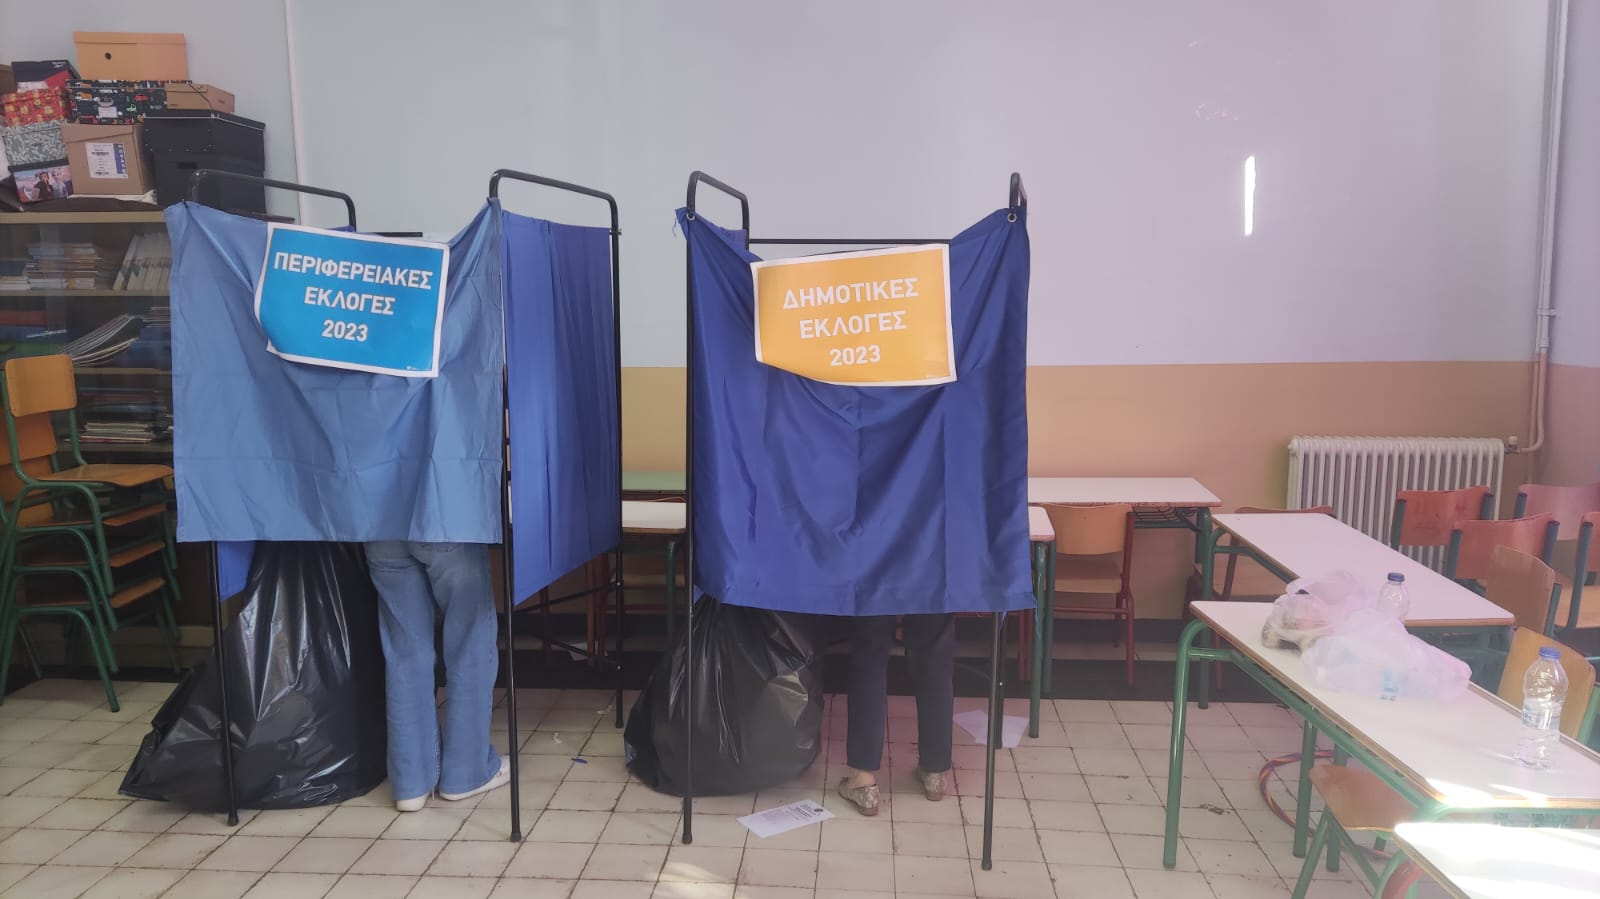 Άργος: Σε τρία εκλογικά τμήματα προηγείται ο Καμπόσος